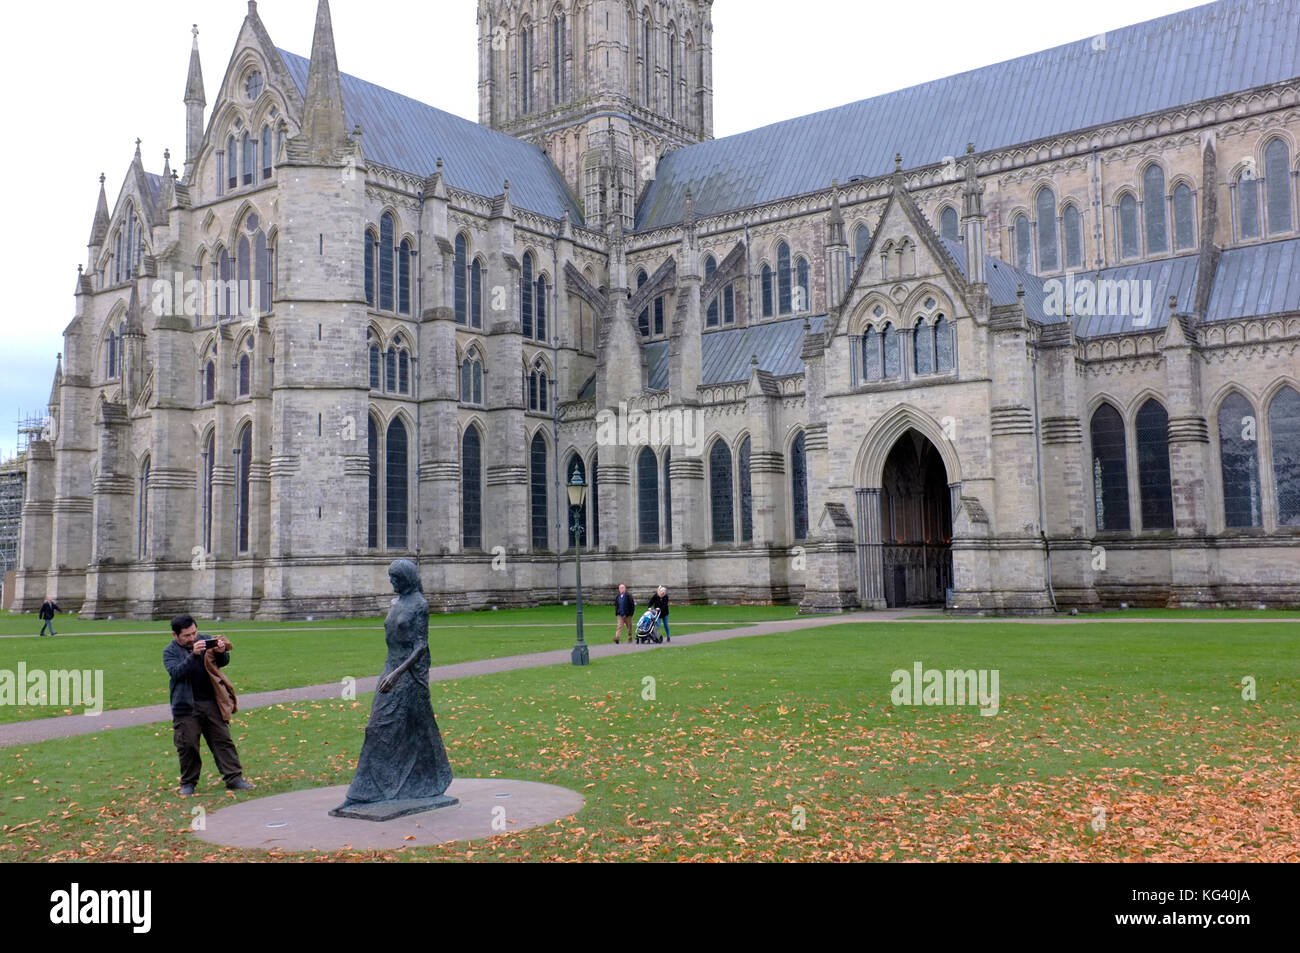 Un touriste prend une photo à l'extérieur de la cathédrale de Salisbury Banque D'Images